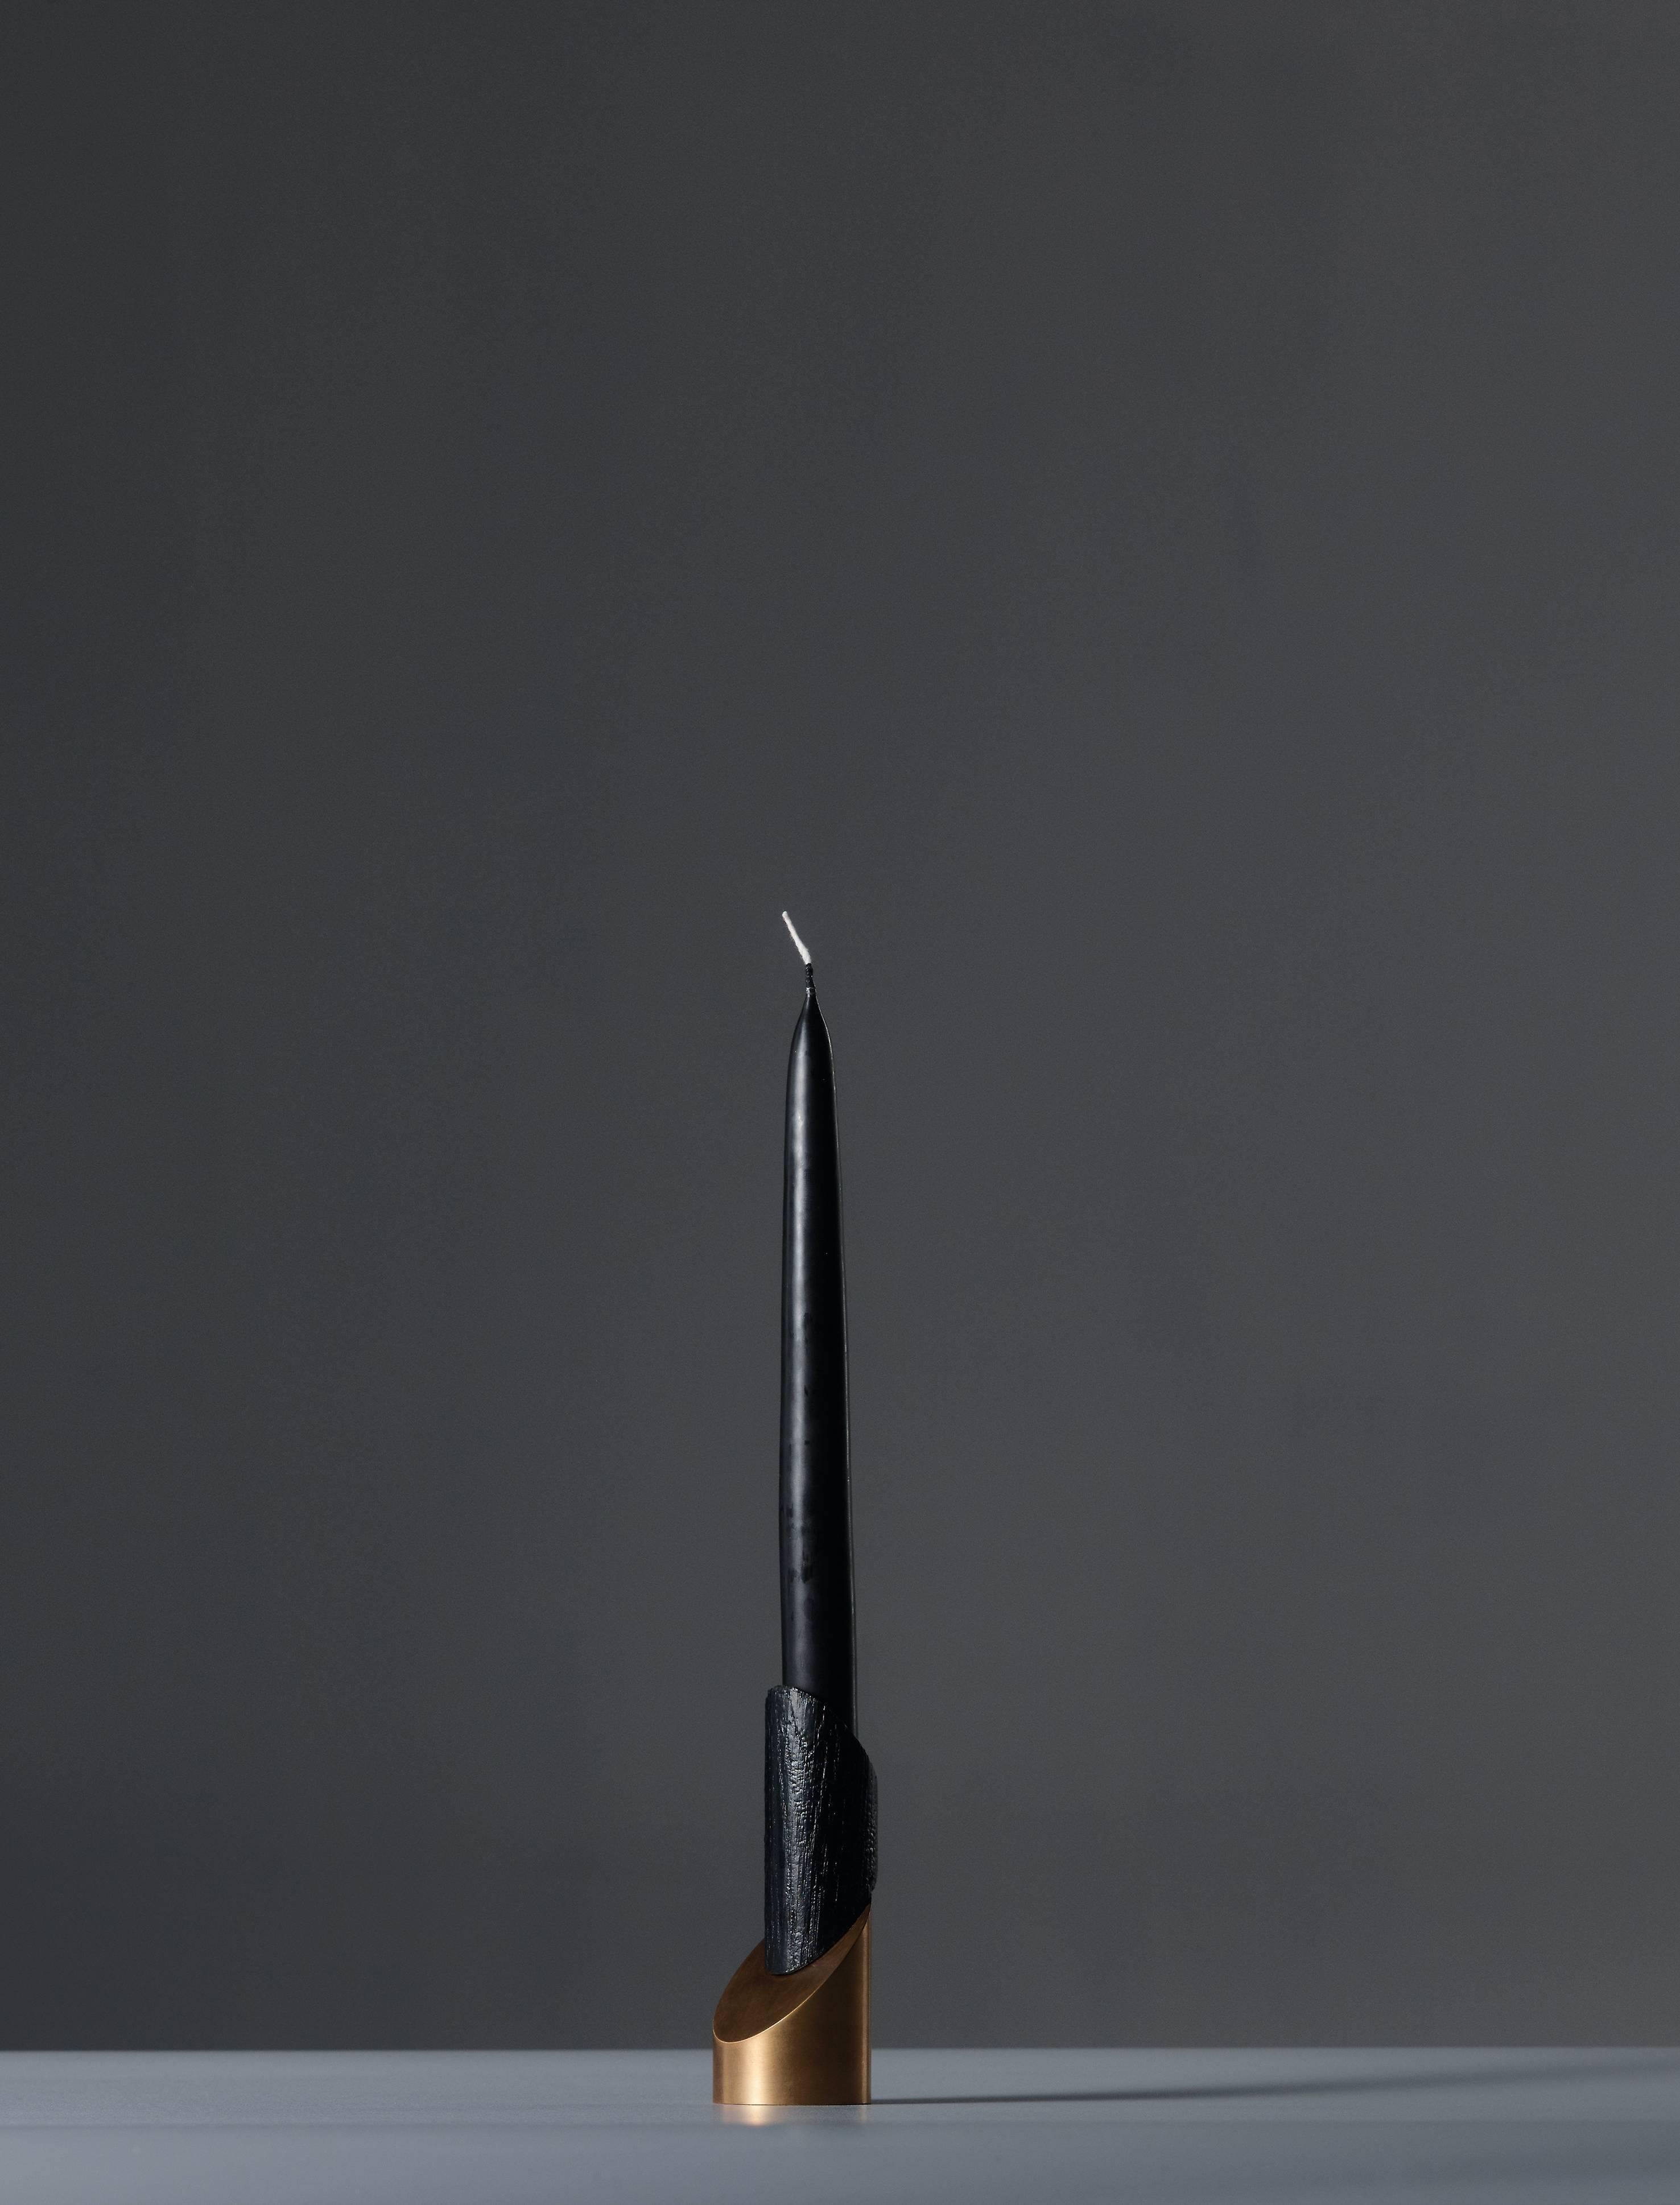 Bronze Asche zu Asche Kerzenhalter 
Unterzeichnet William Guillon
Limitierte Auflage von 99 Stück
Signiert und nummeriert
Massive gebrannte Eiche / massive Bronze
Abmessungen: 13 x 5,6 x 5 cm (Höhe mit Kerze 35 cm) 
Handgeformt in